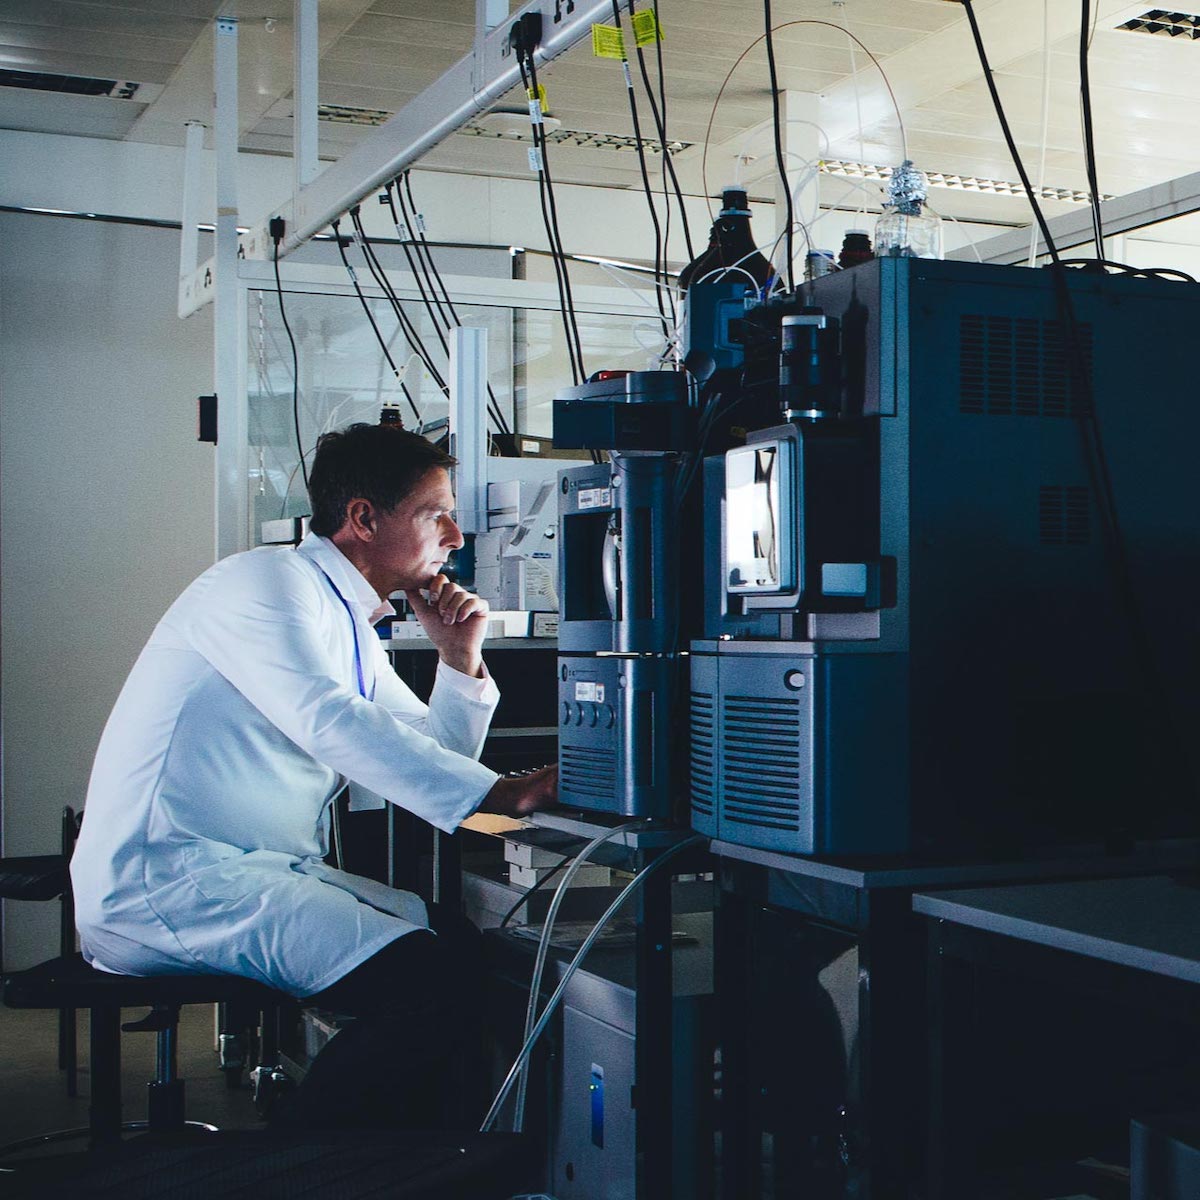 man in lab coat looking at scientific equipment